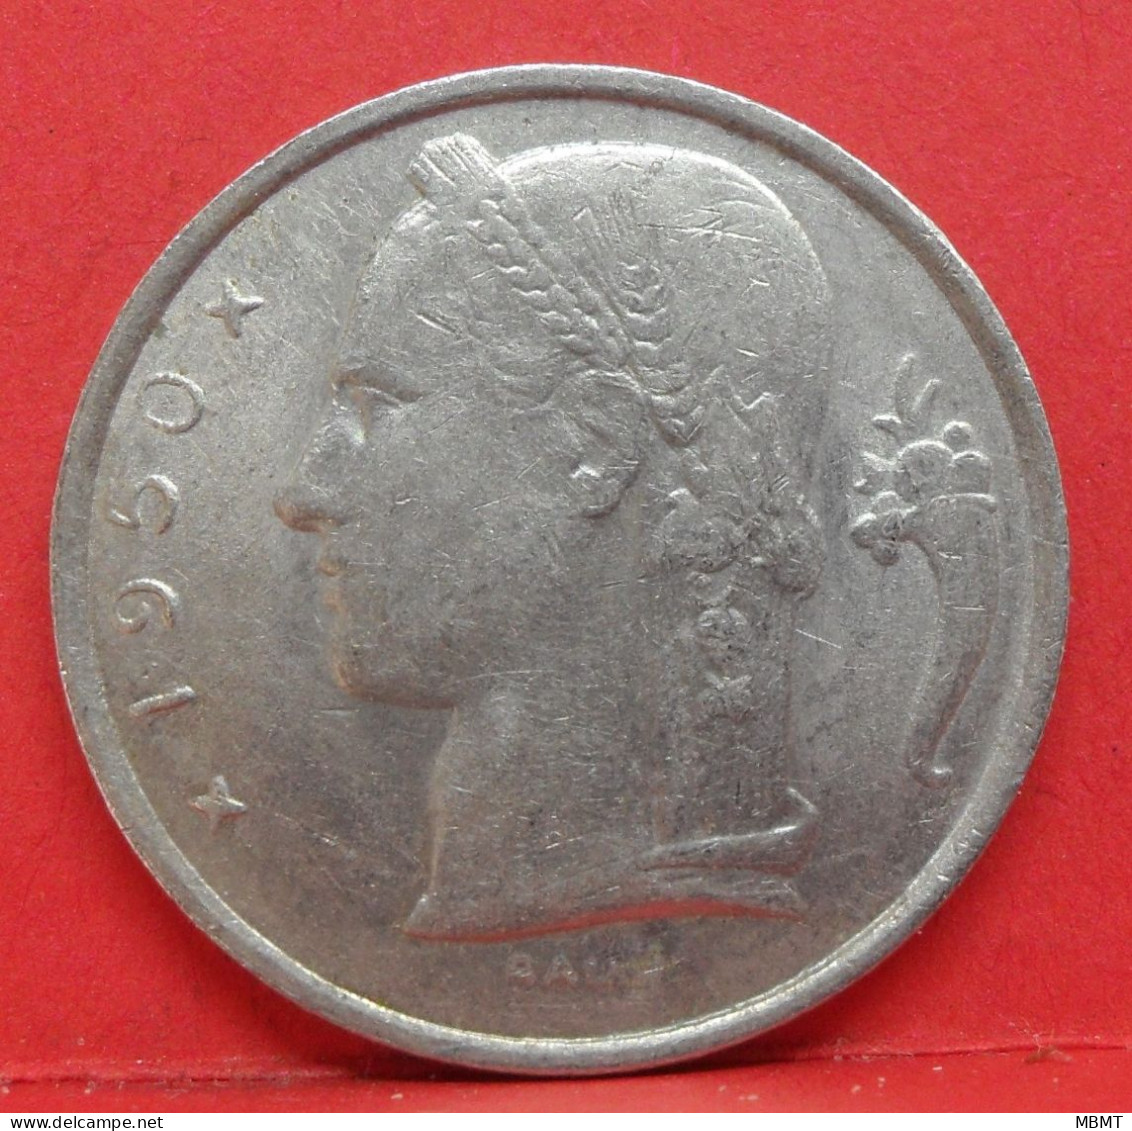 5 Francs 1950 - TTB - Pièce Monnaie Belgique - Article N°1804 - 5 Franc